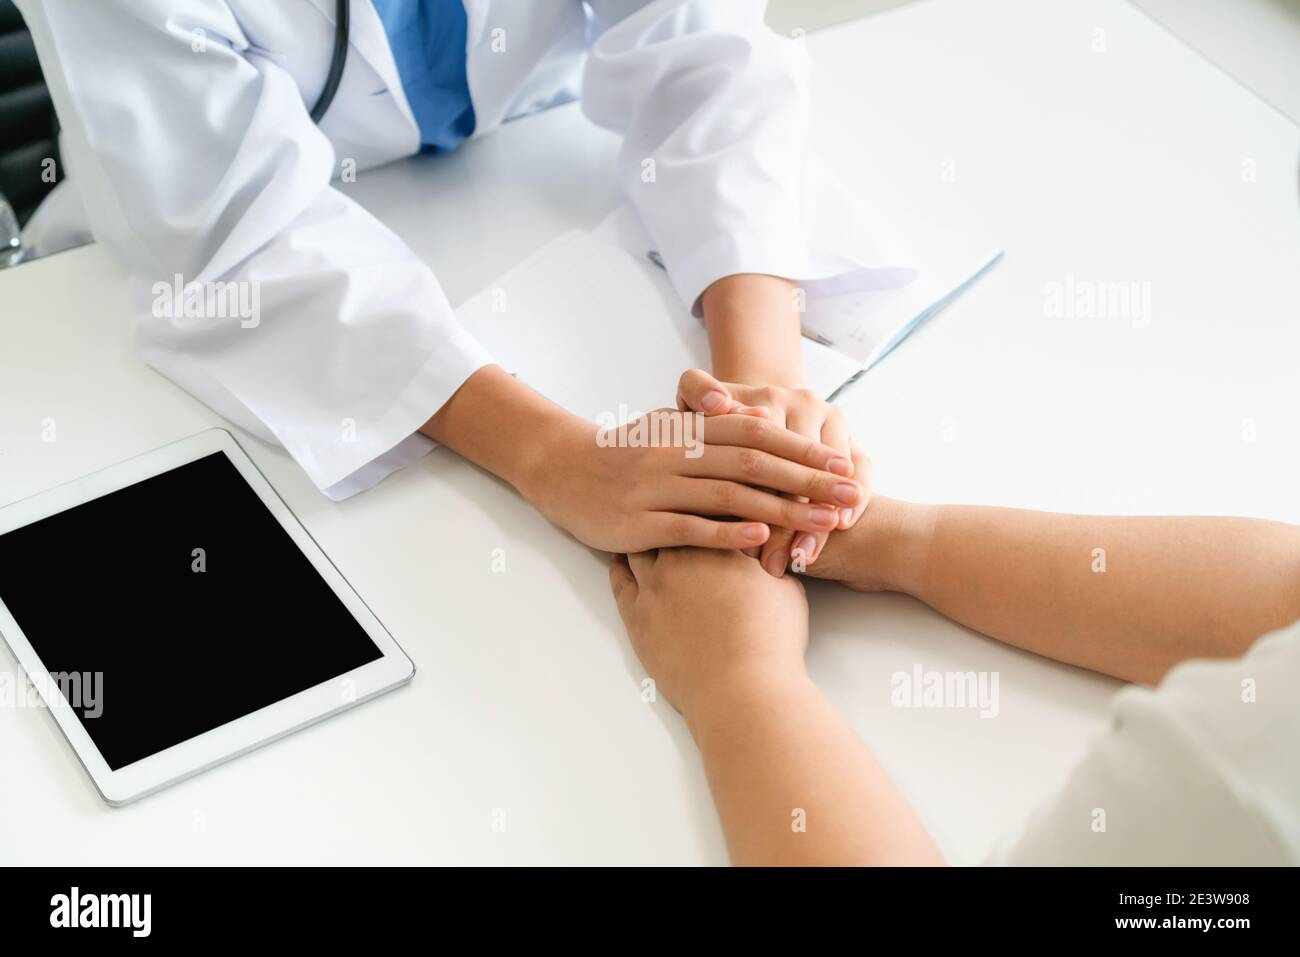 Frau Doktor hält Patienten hand Patient im Zimmer des Krankenhauses. Gesundheitswesen und medizinische Betreuung. Stockfoto